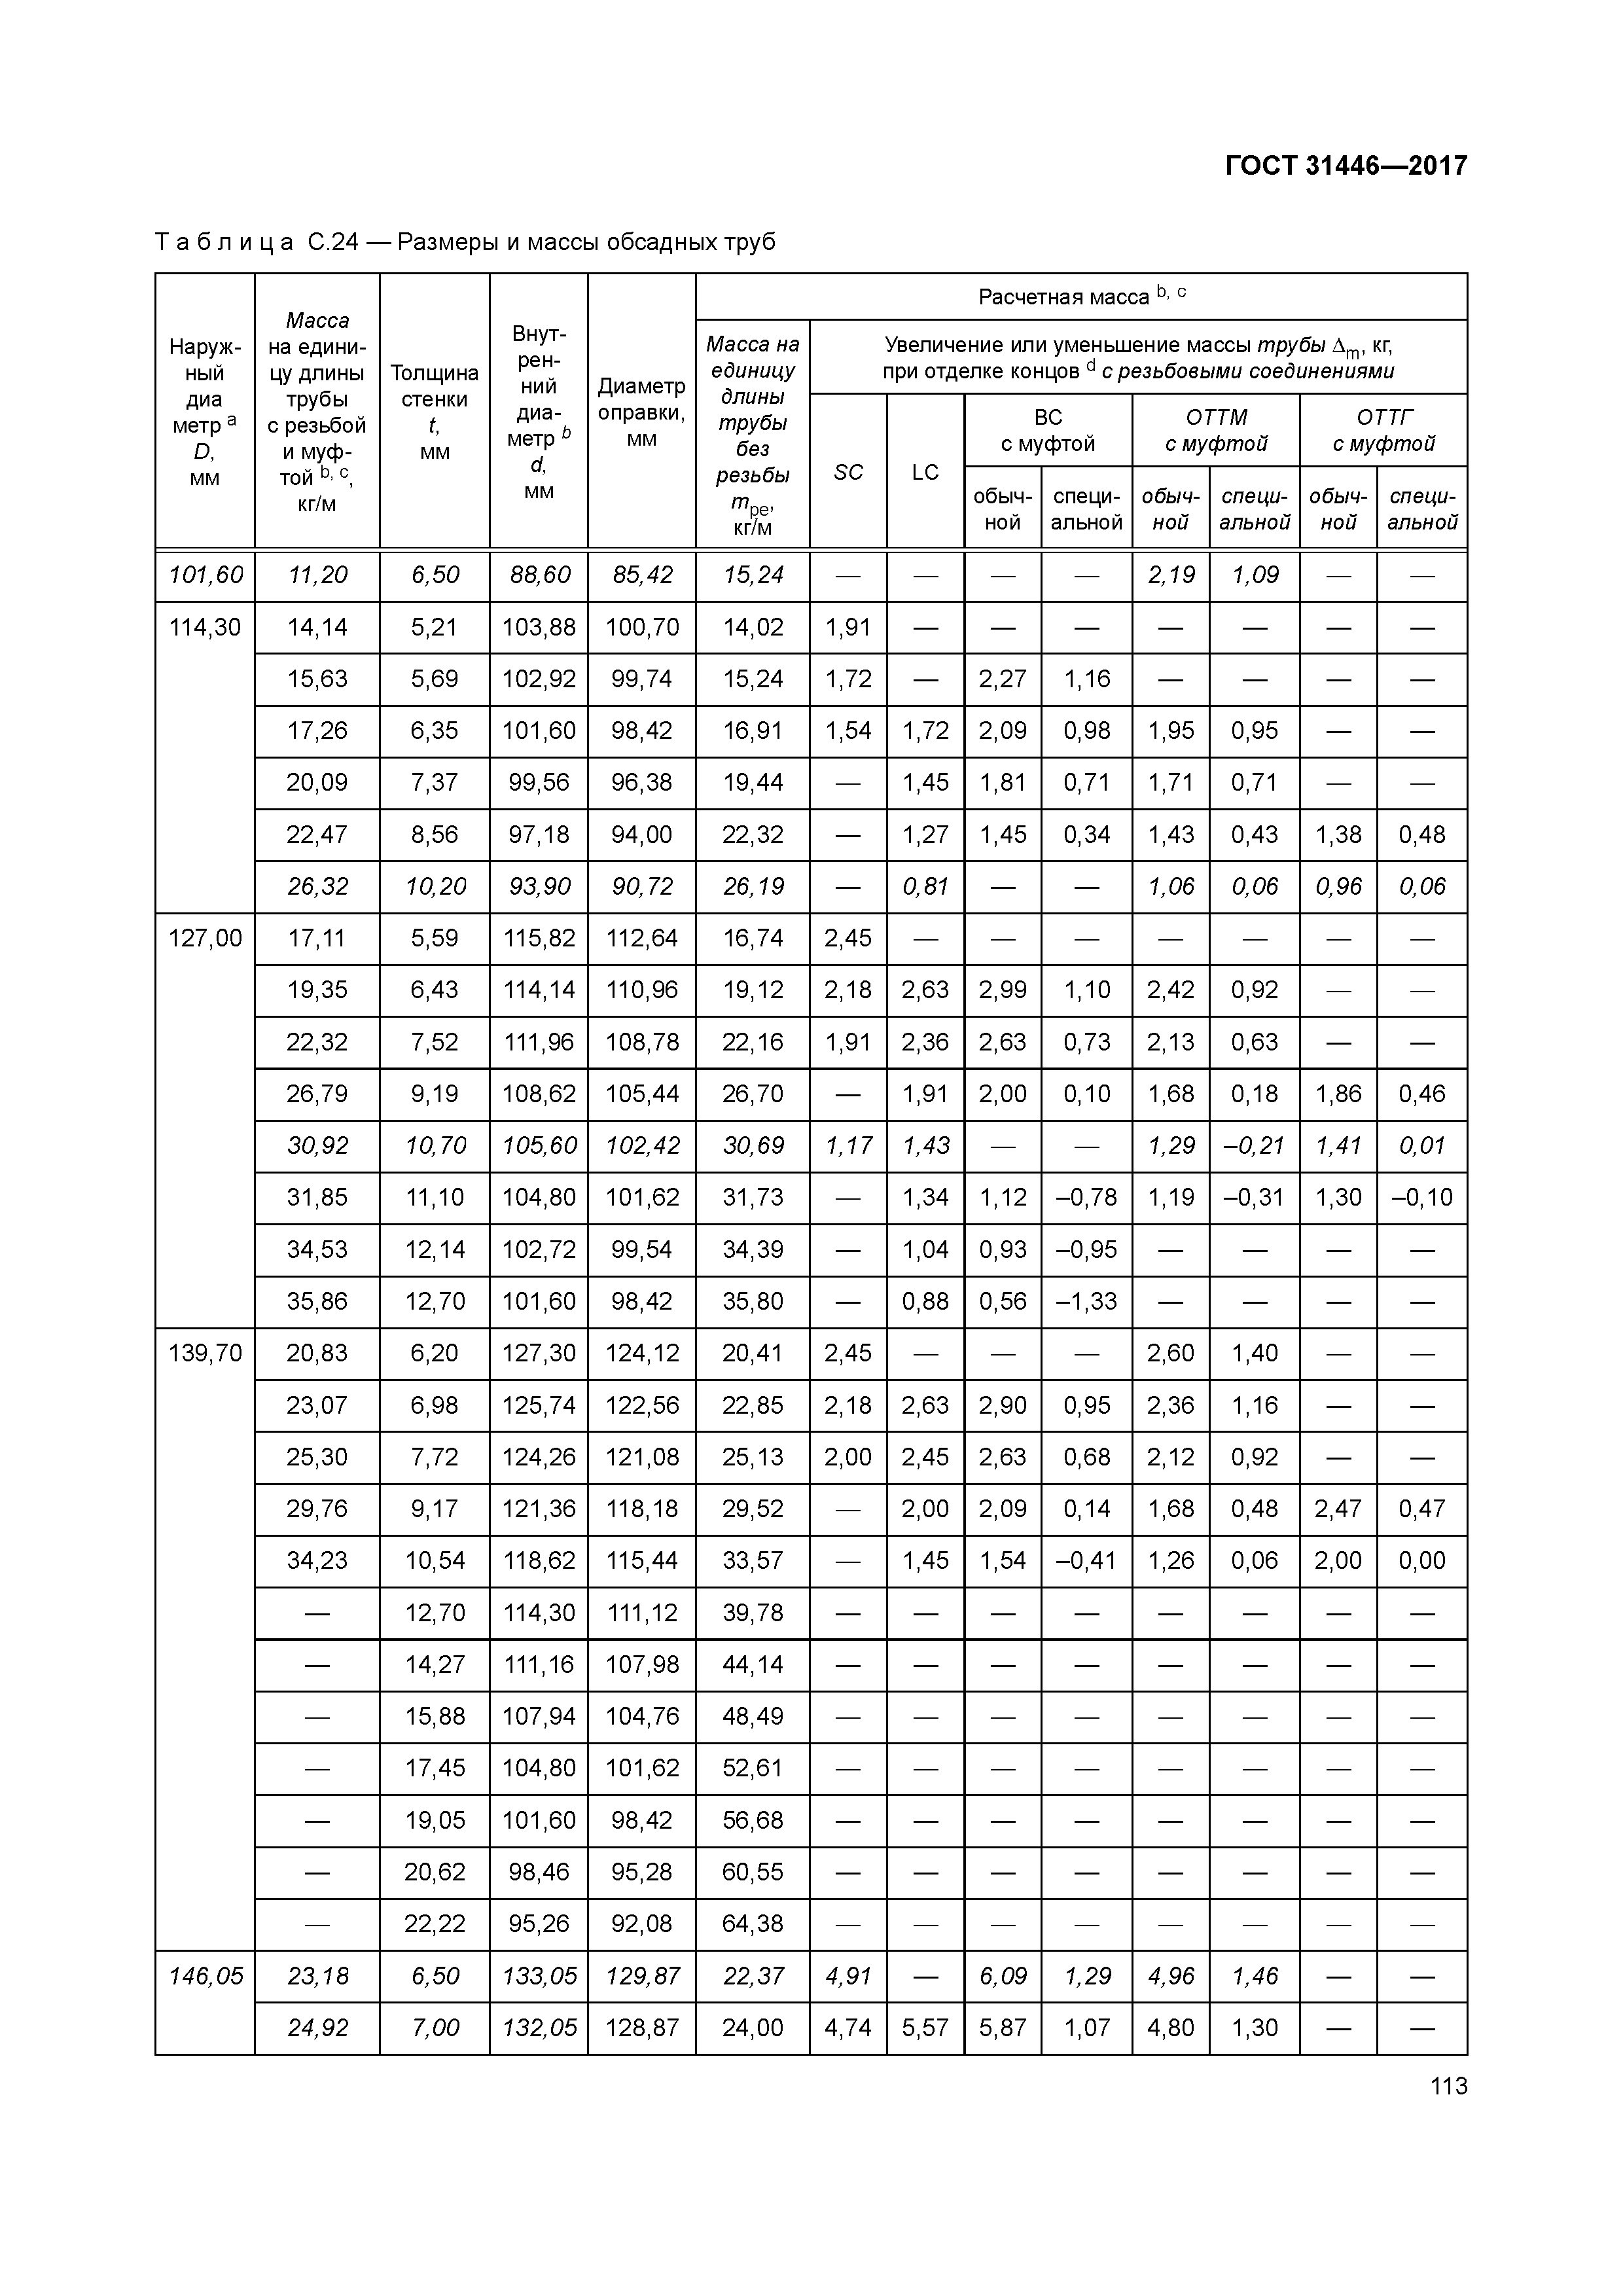 Таблица размеров металлических обсадных труб